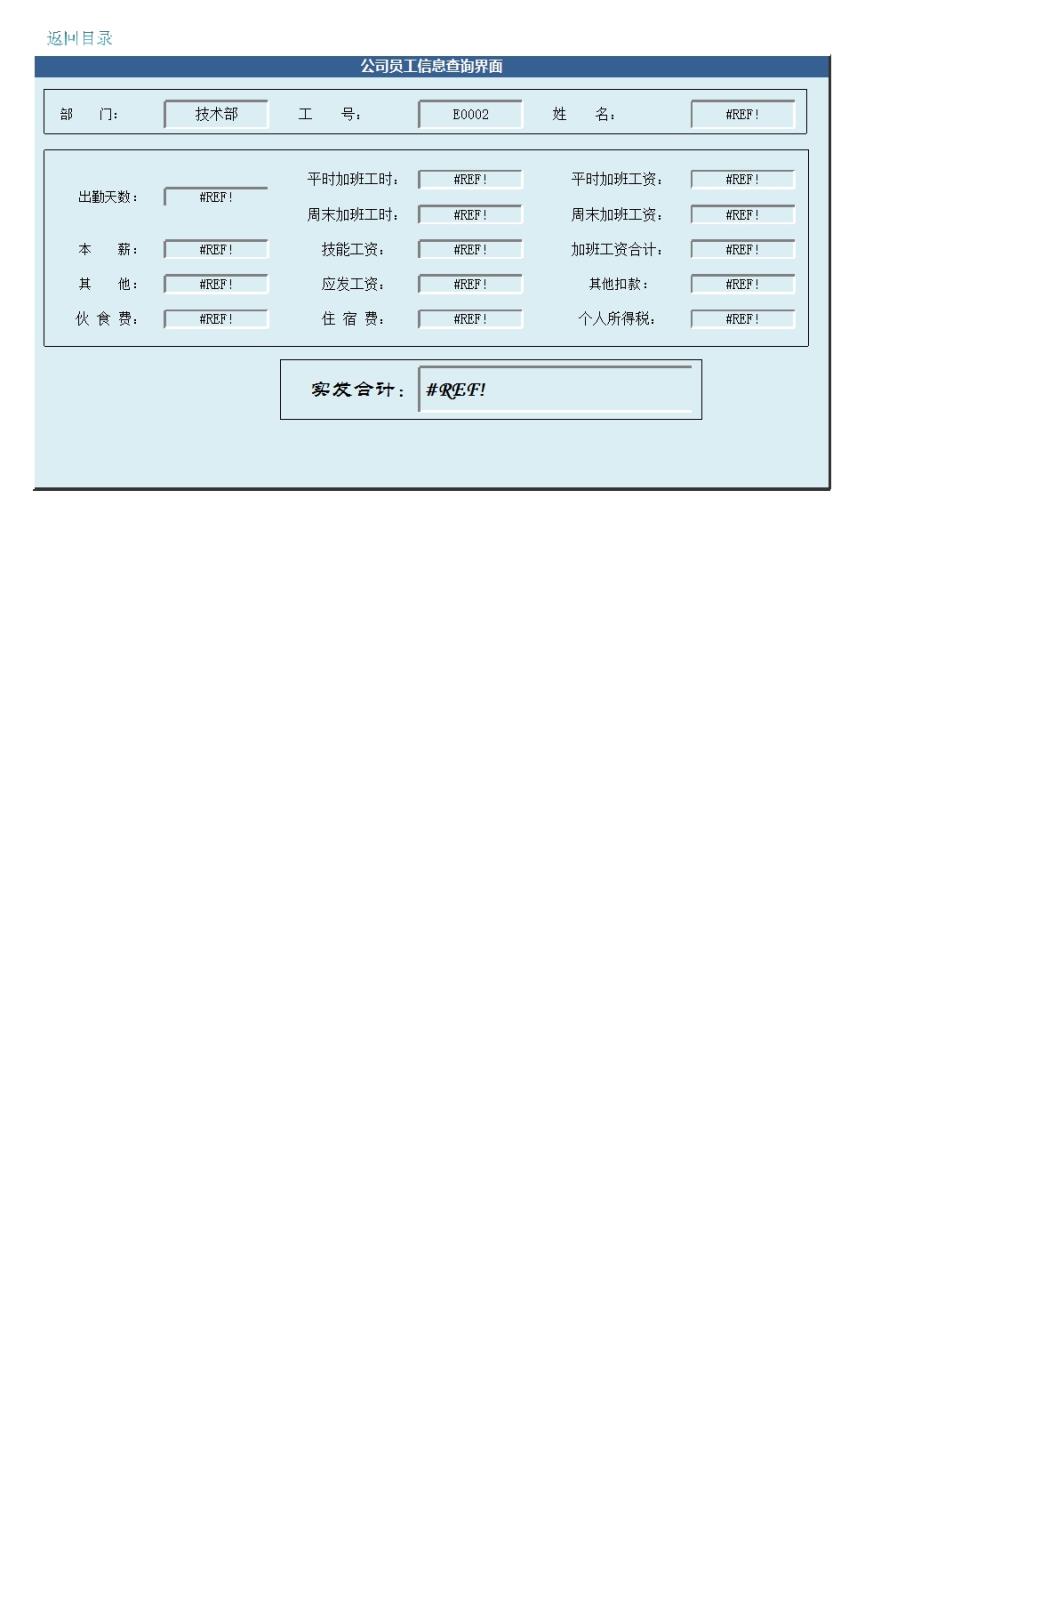 工资管理系统Excel模板_03